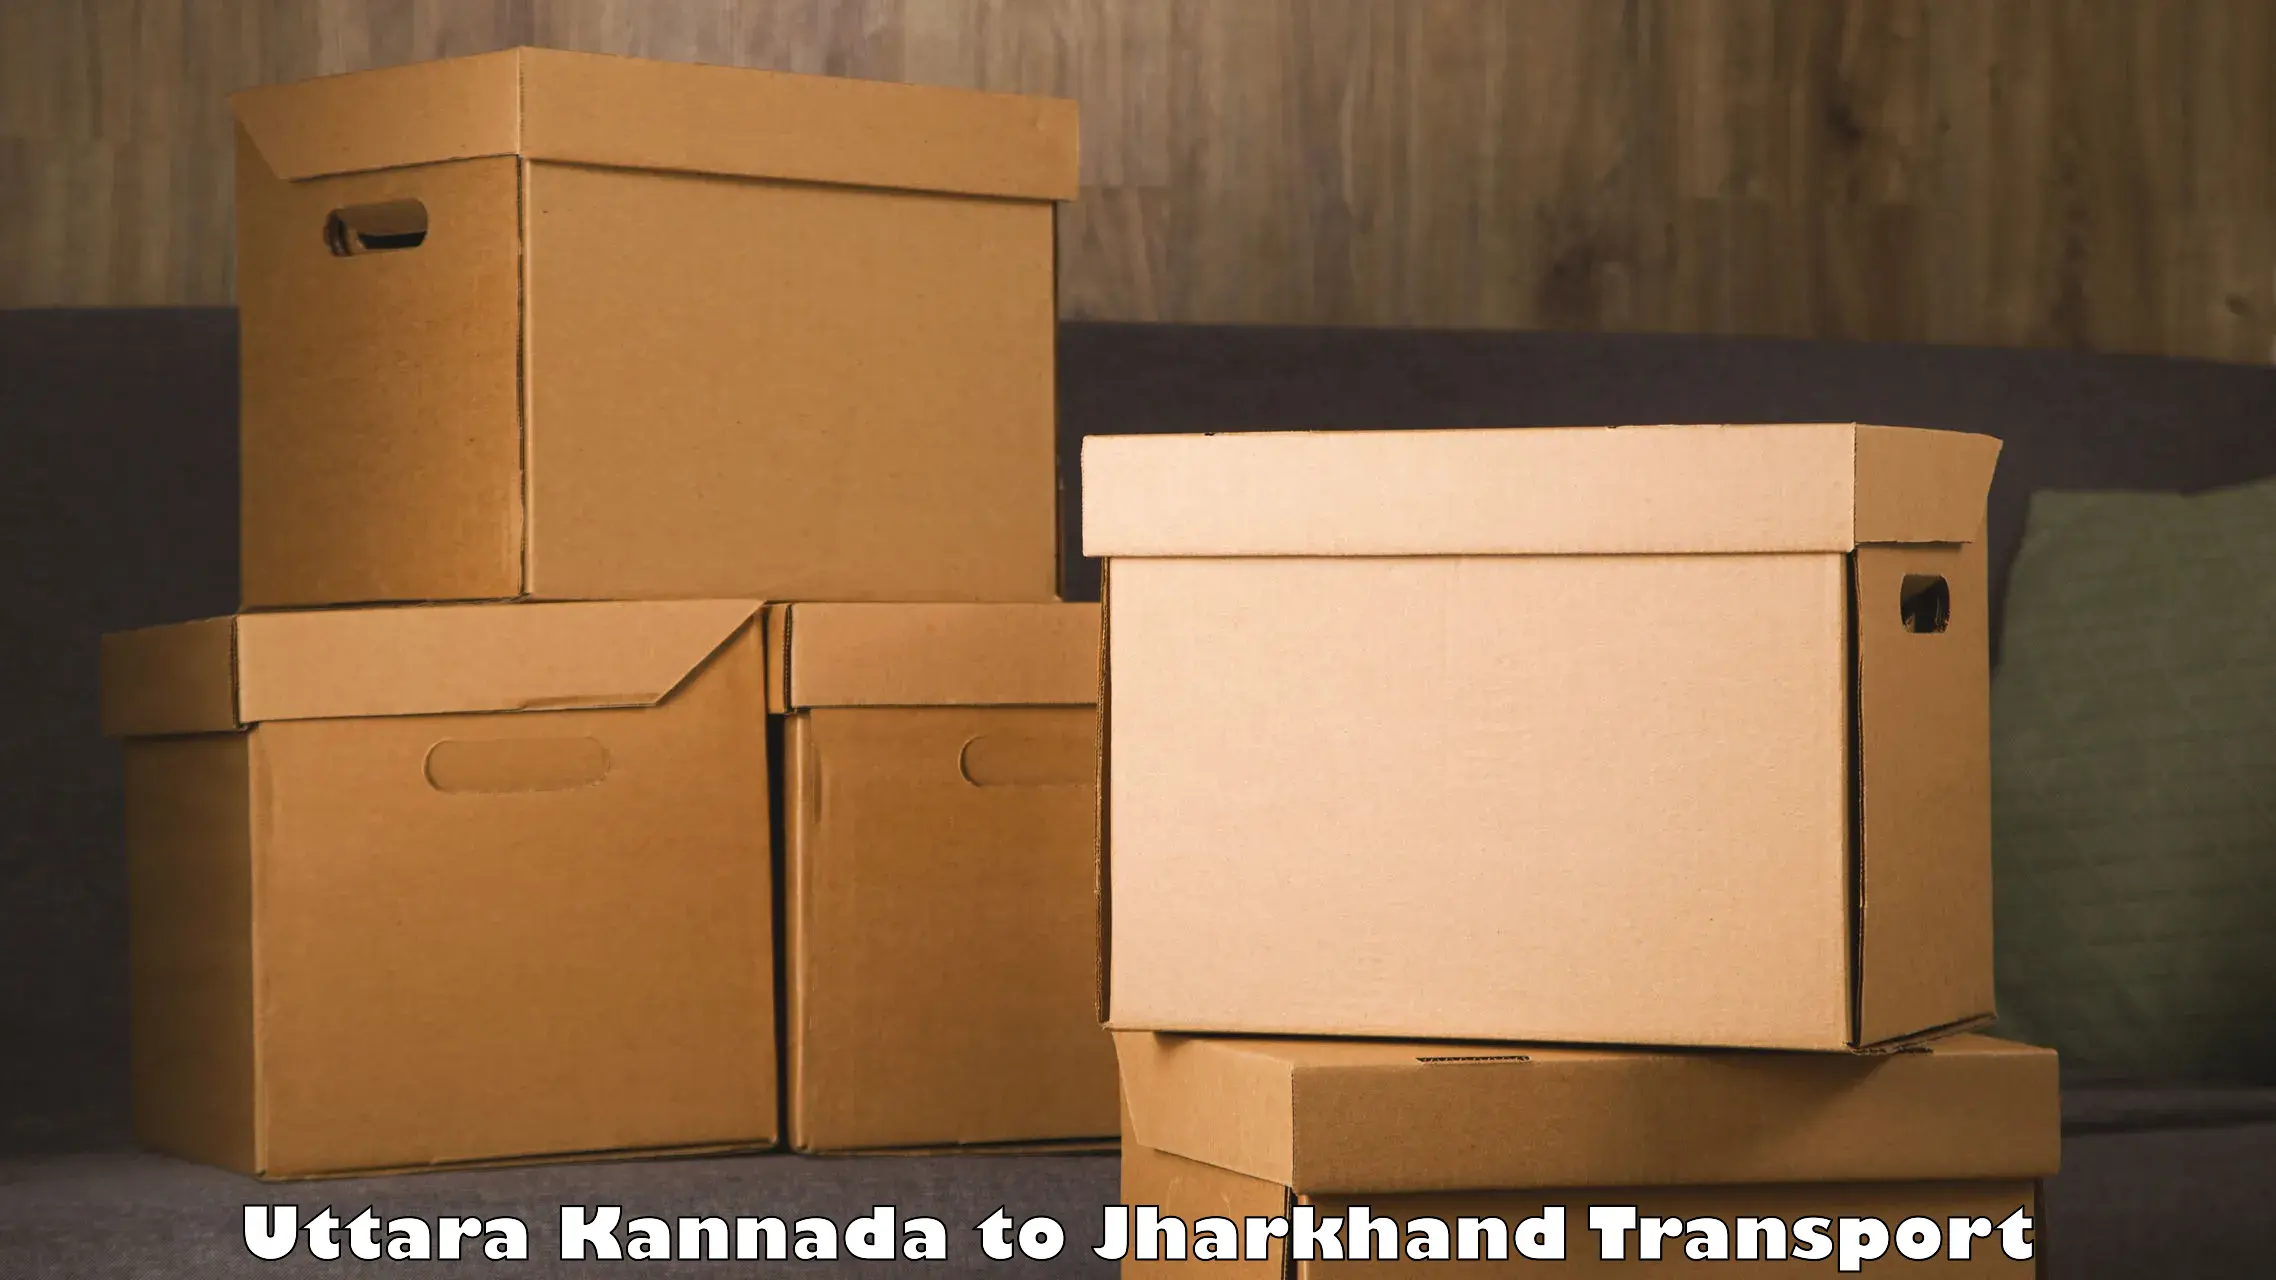 Logistics transportation services Uttara Kannada to Kedla